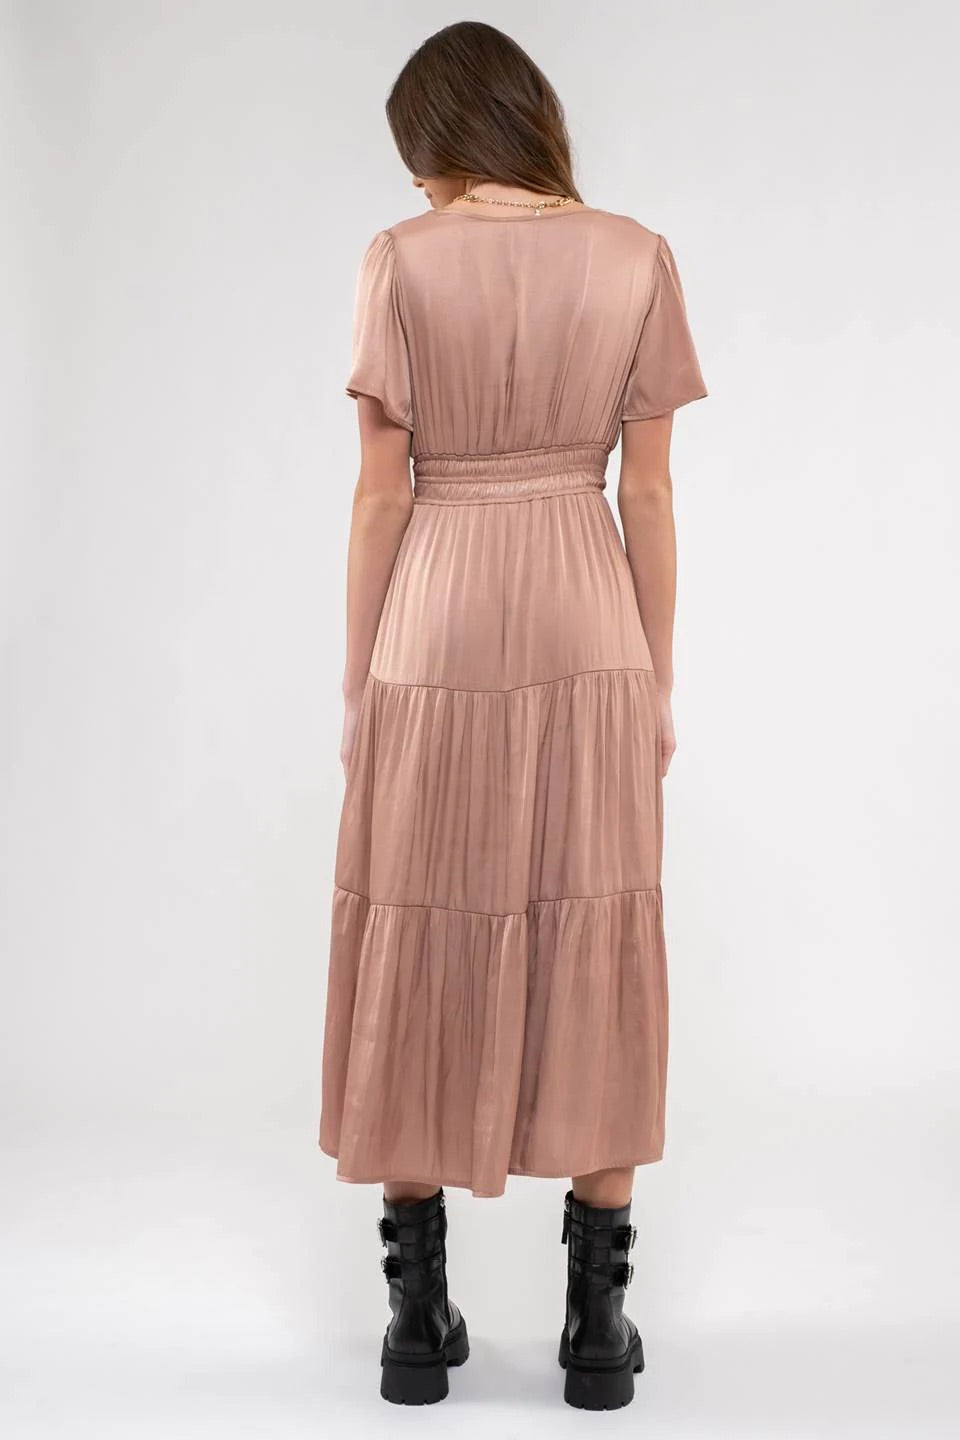 The Brynn Tiered Midi Dress